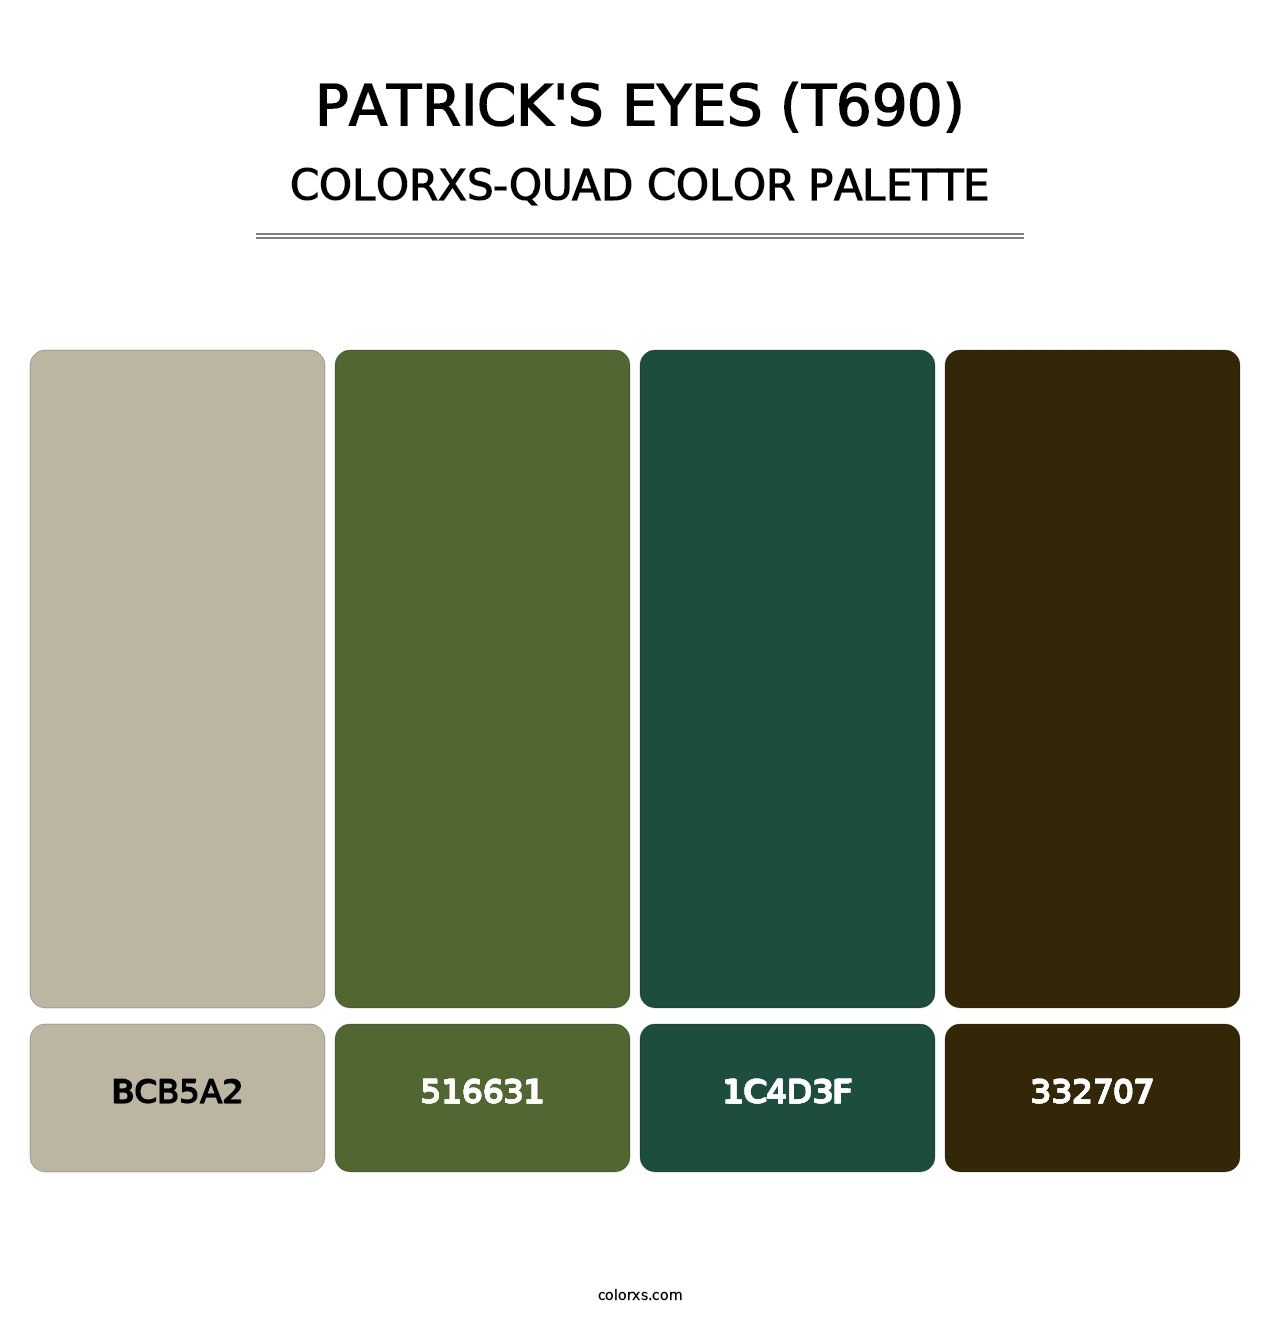 Patrick's Eyes (T690) - Colorxs Quad Palette